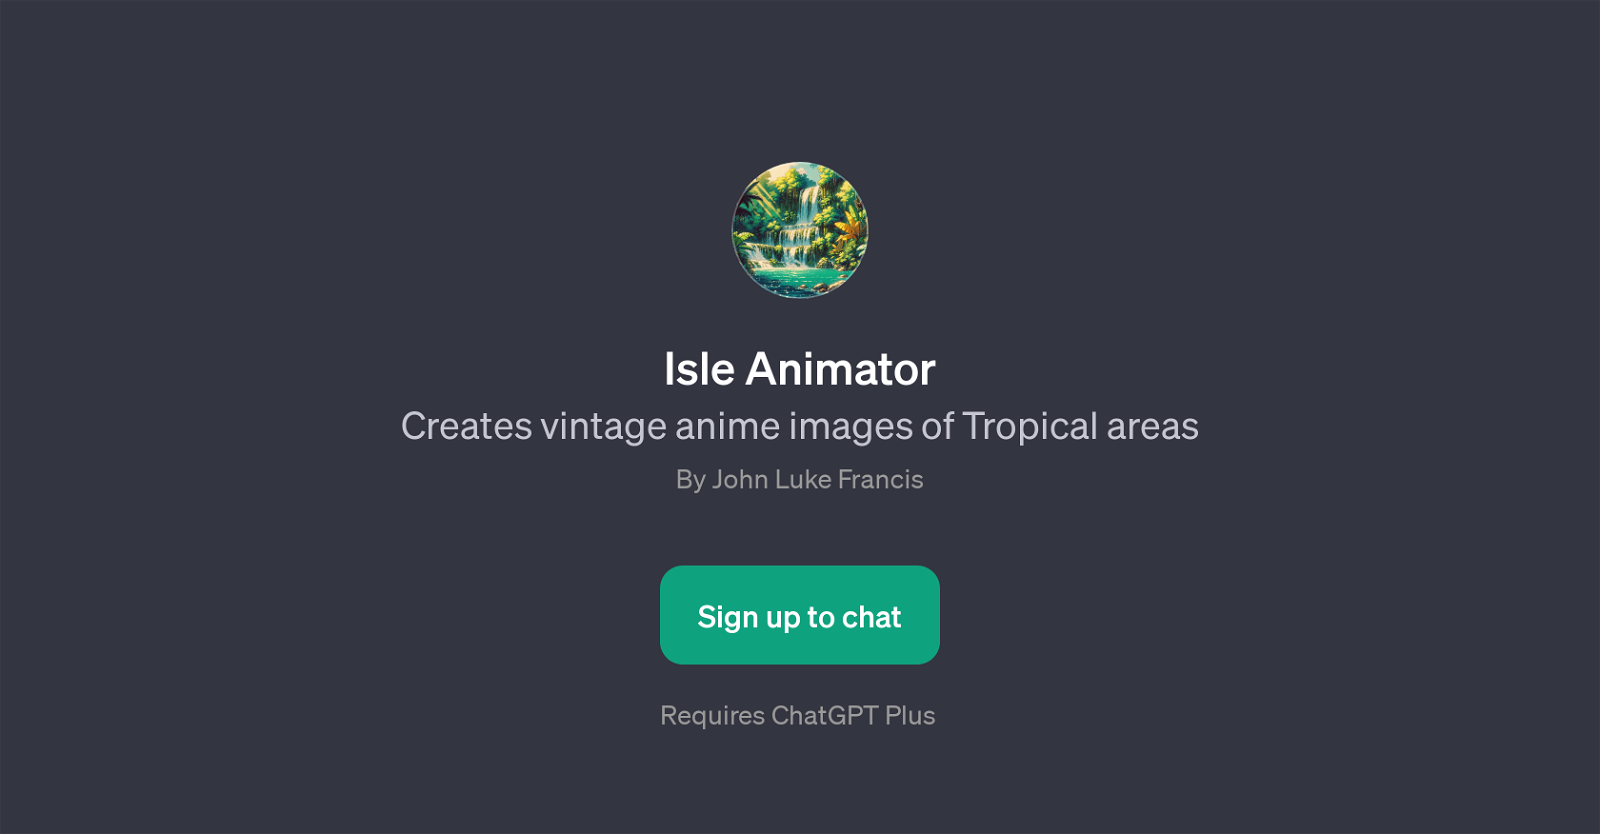 Isle Animator website